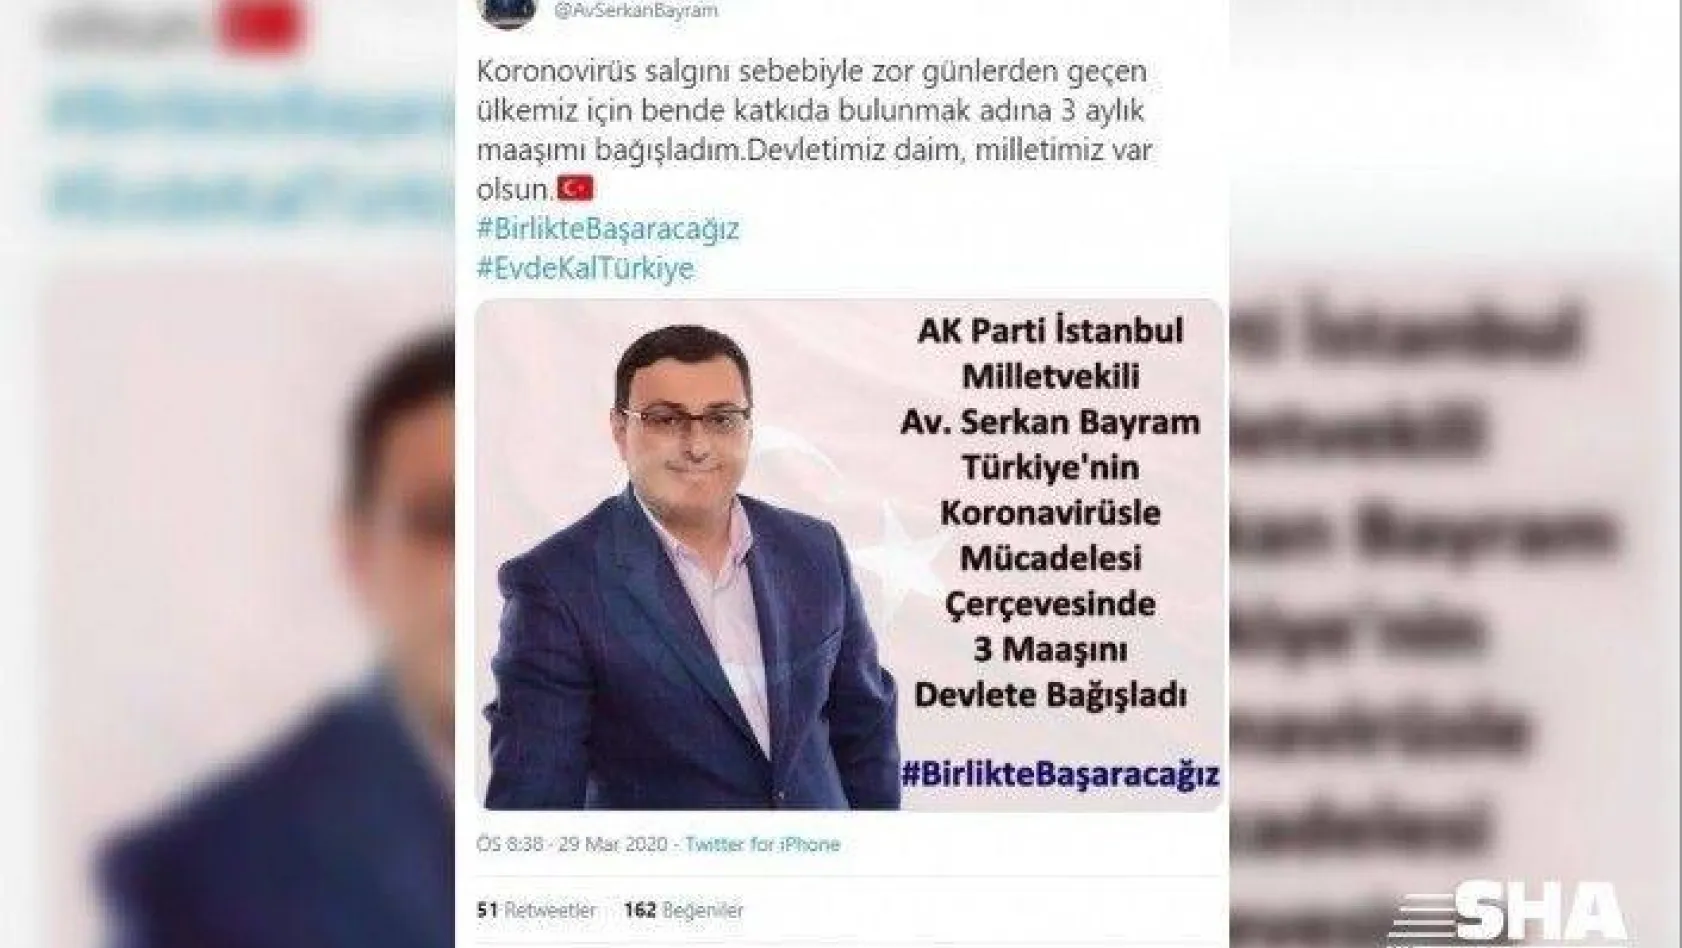 AK Parti İstanbul Milletvekili'nden korona virüsle mücadeleye anlamlı destek